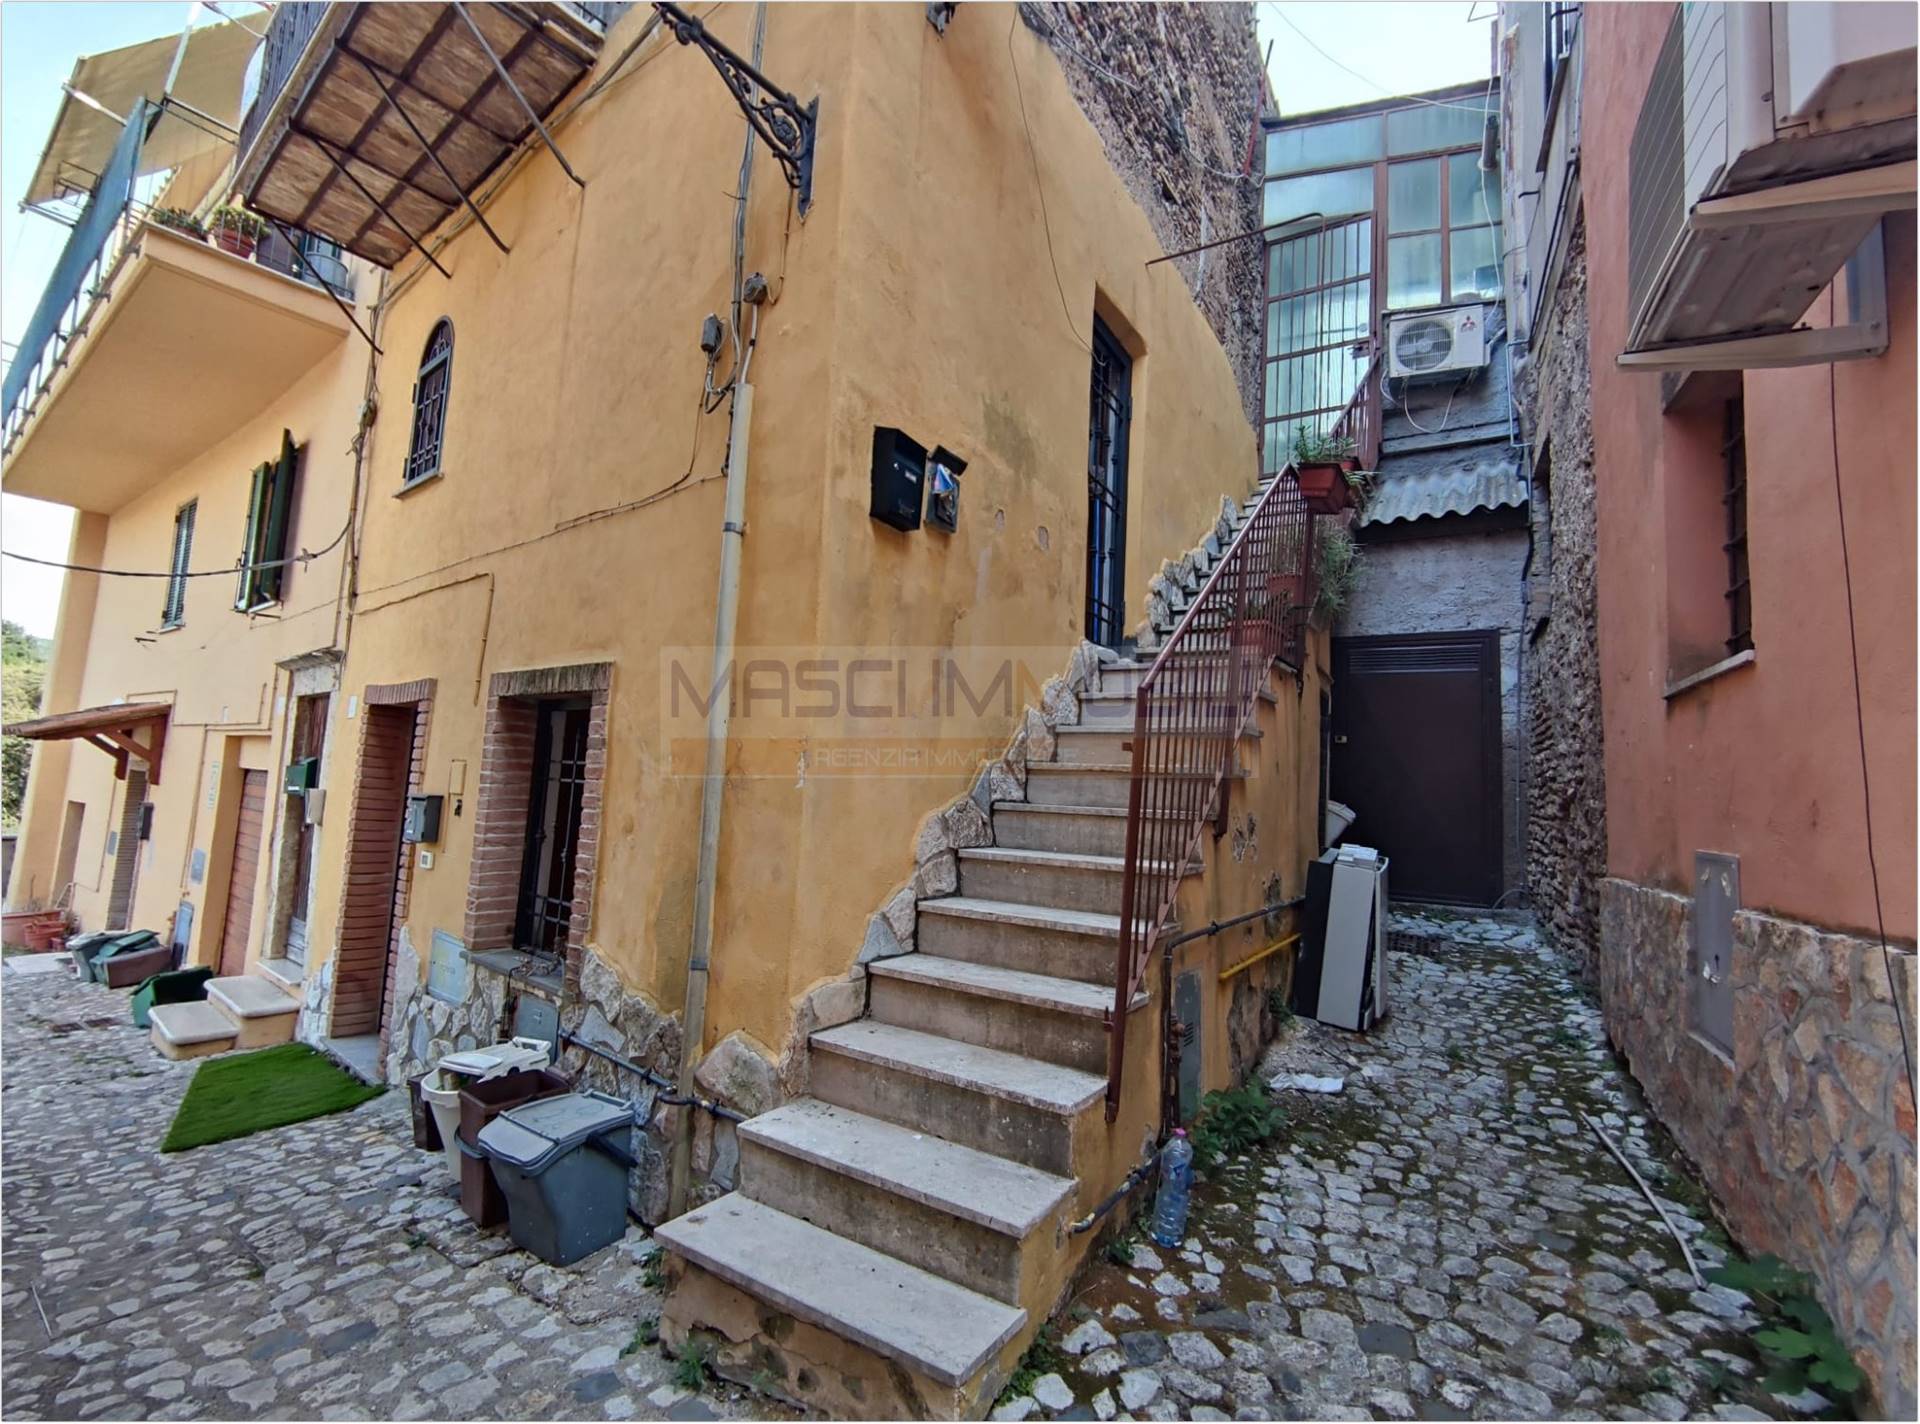 Appartamento in vendita a Fiano Romano, 2 locali, prezzo € 29.000 | PortaleAgenzieImmobiliari.it